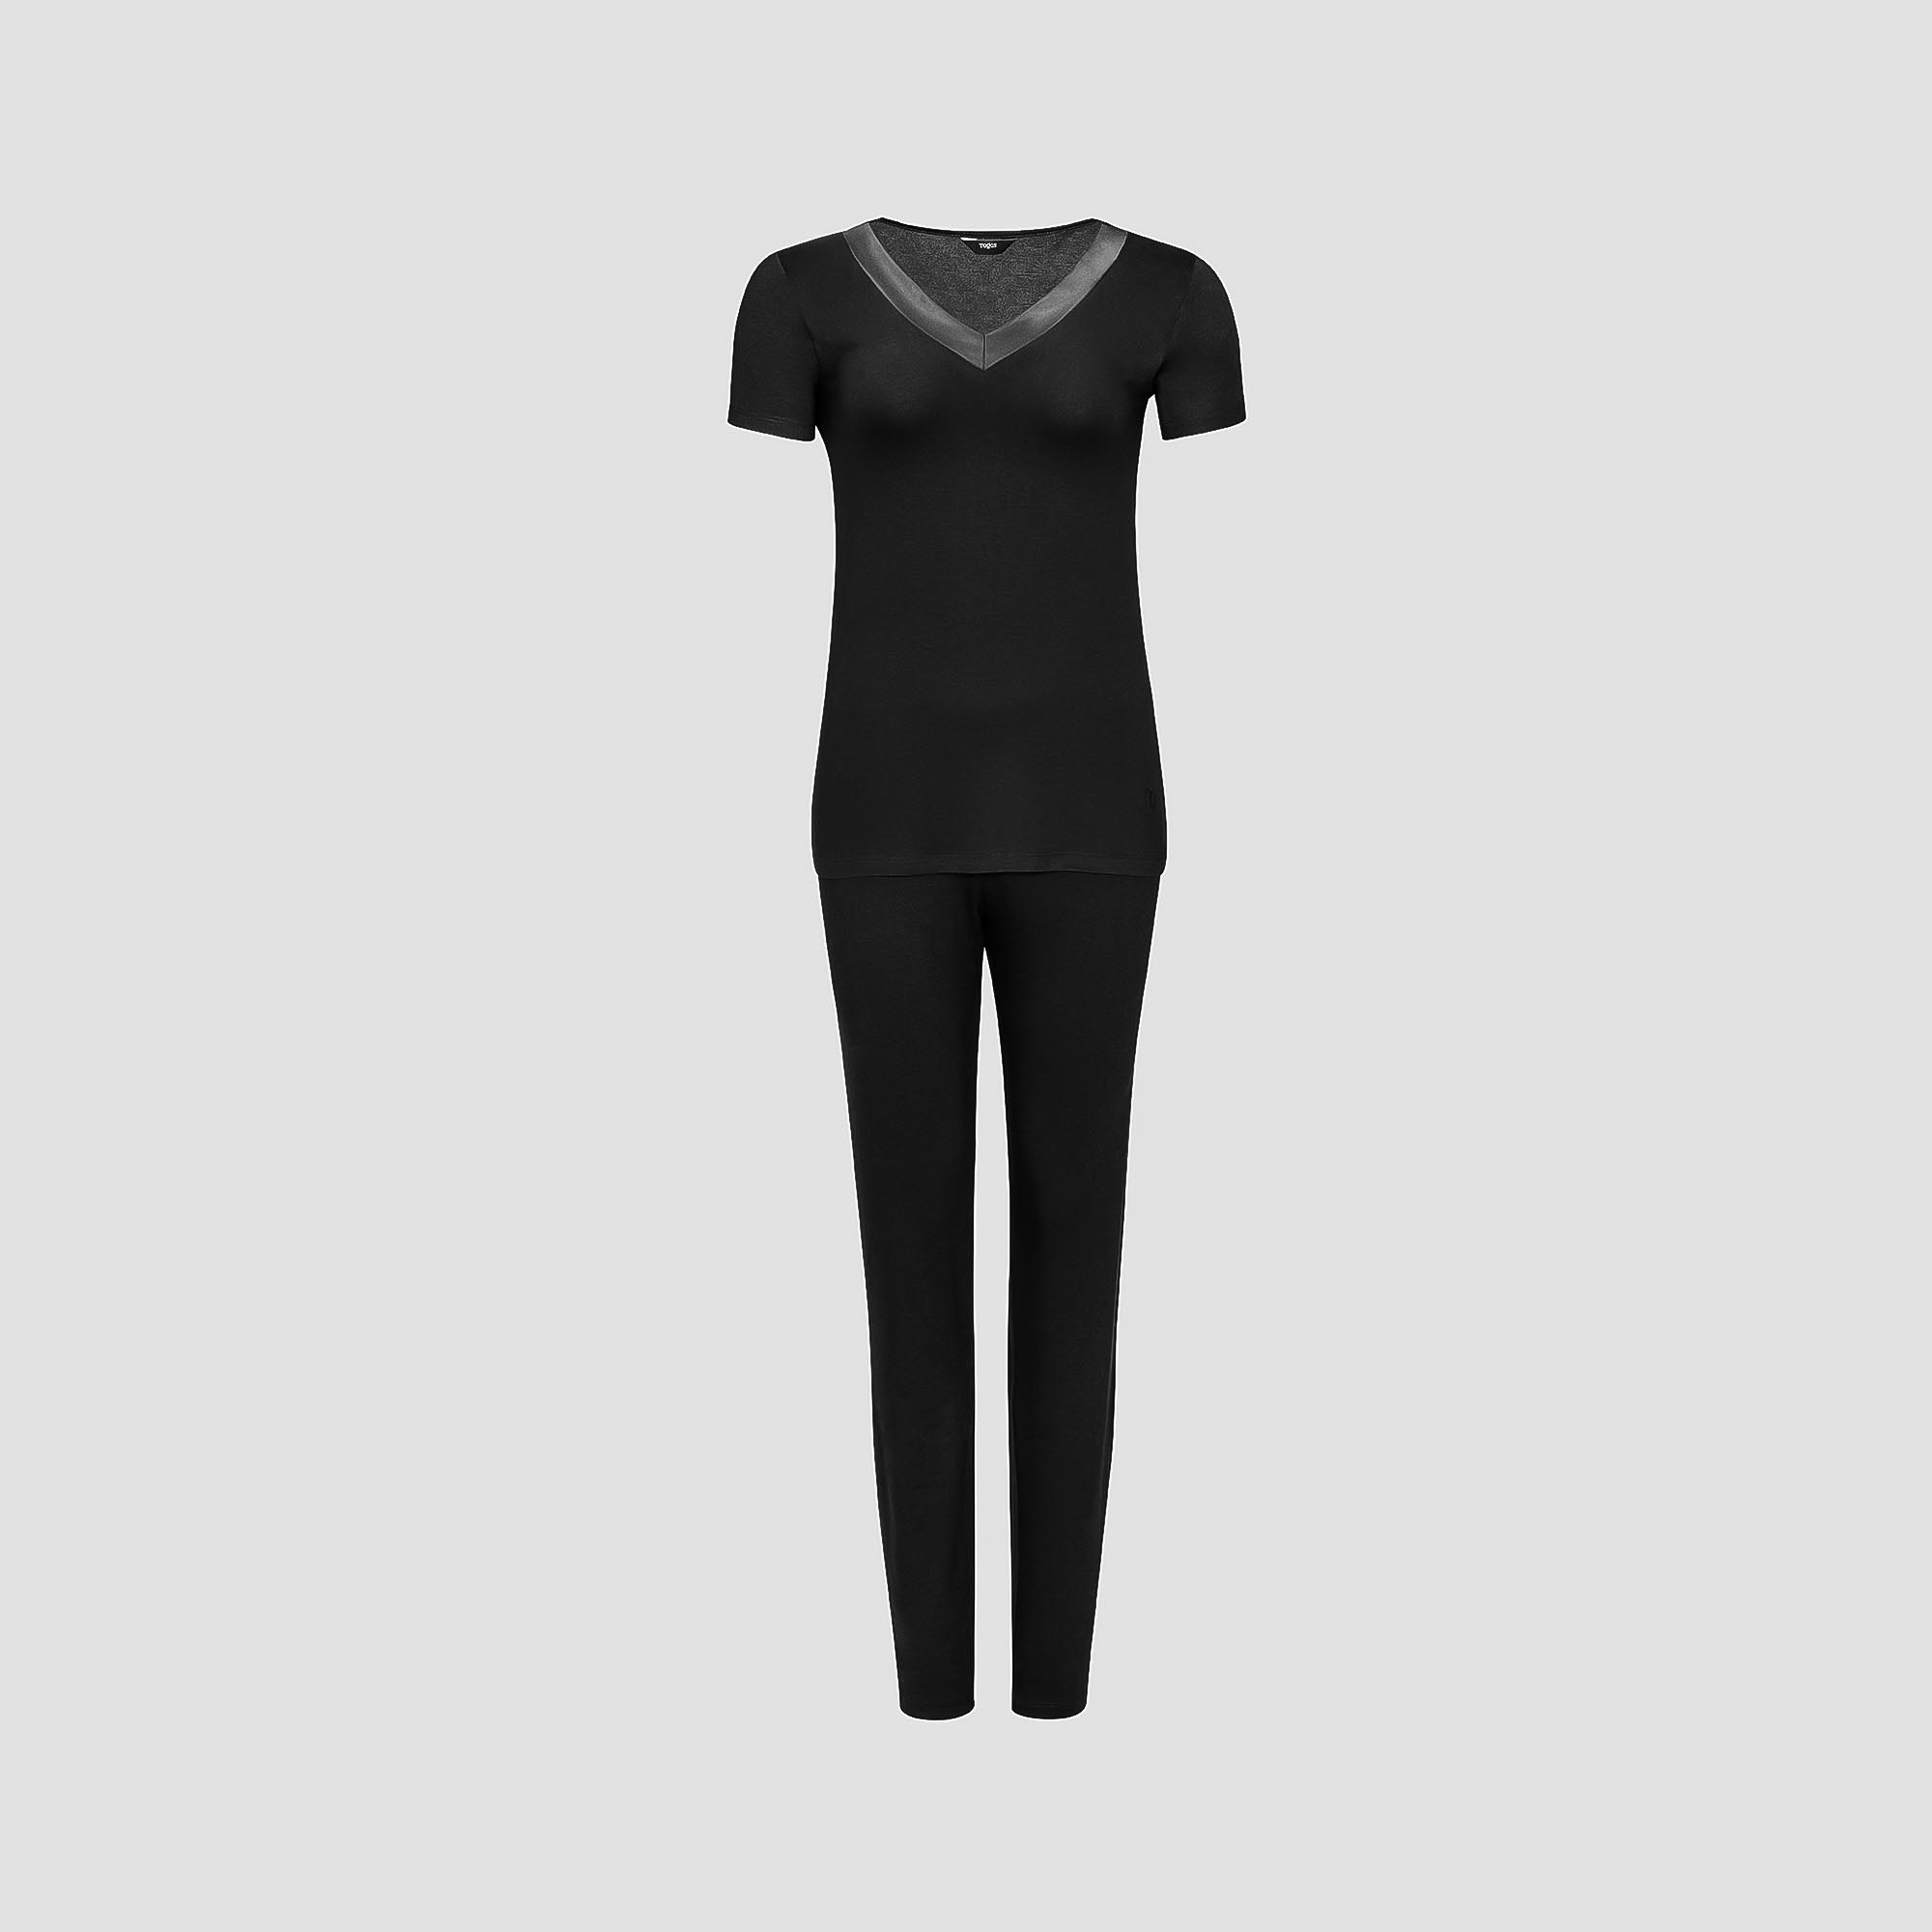 Пижама Togas Ингелла черная женская M(46) 2 предмета, размер M(46) - фото 1